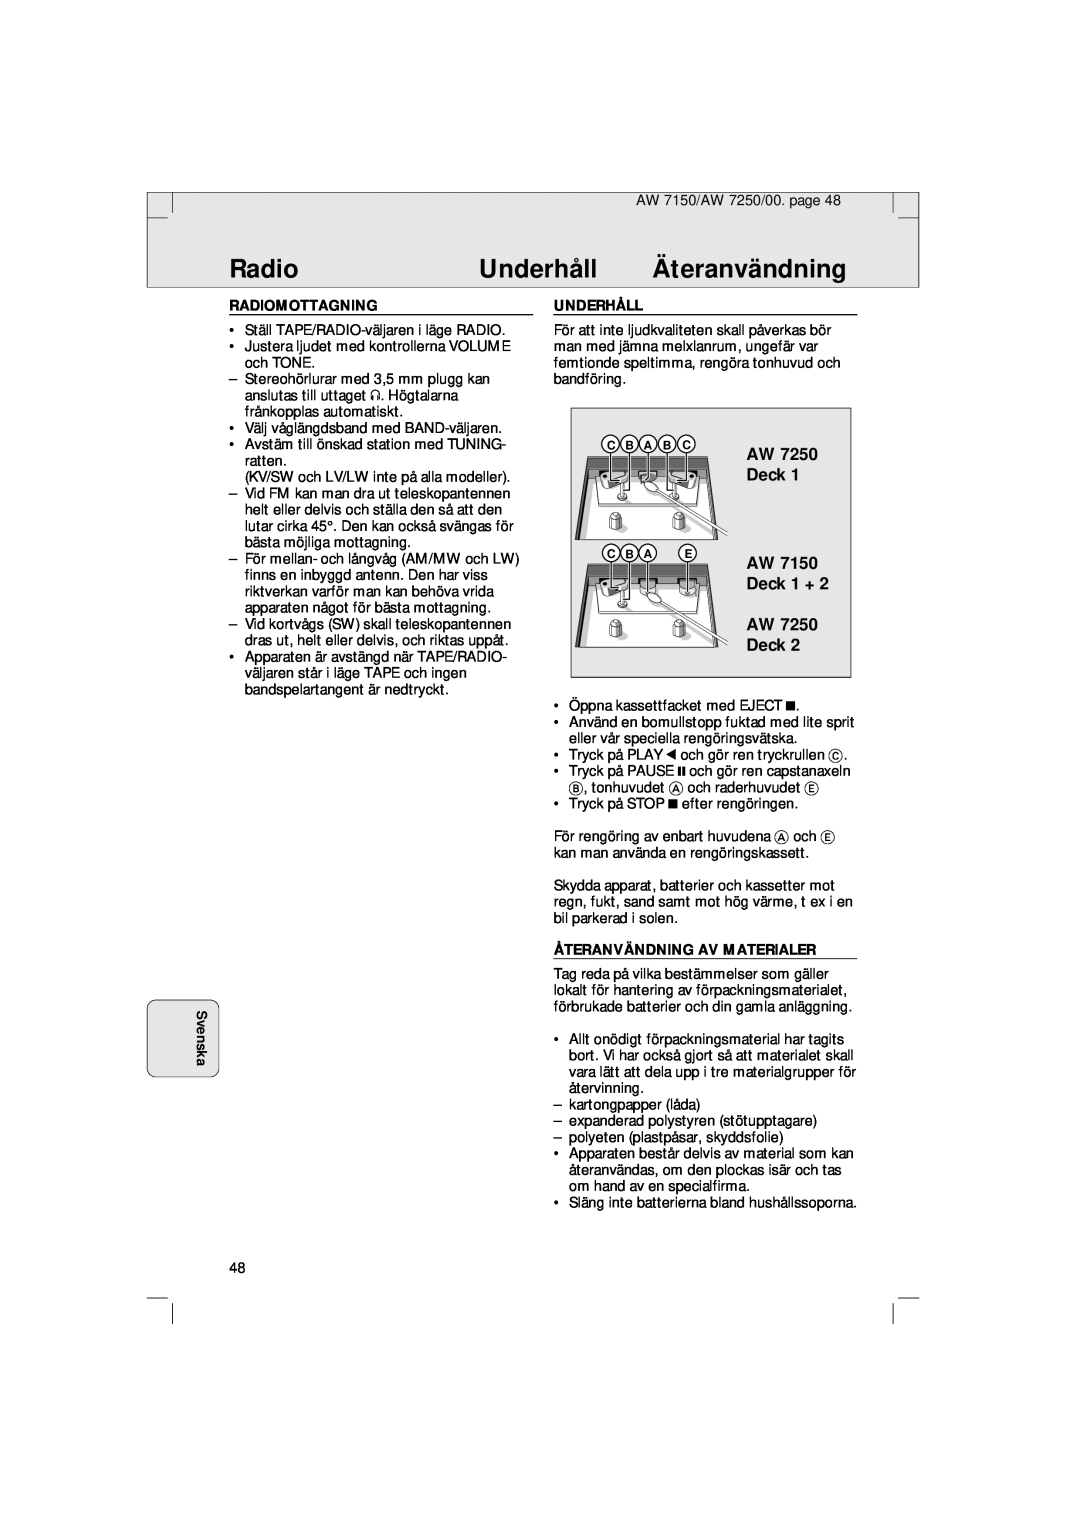 Philips AW 7150/04S, AW 7250/04S manual Underhåll, Äteranvändning, Svenska, Deck 1 + AW Deck, Radiomottagning 